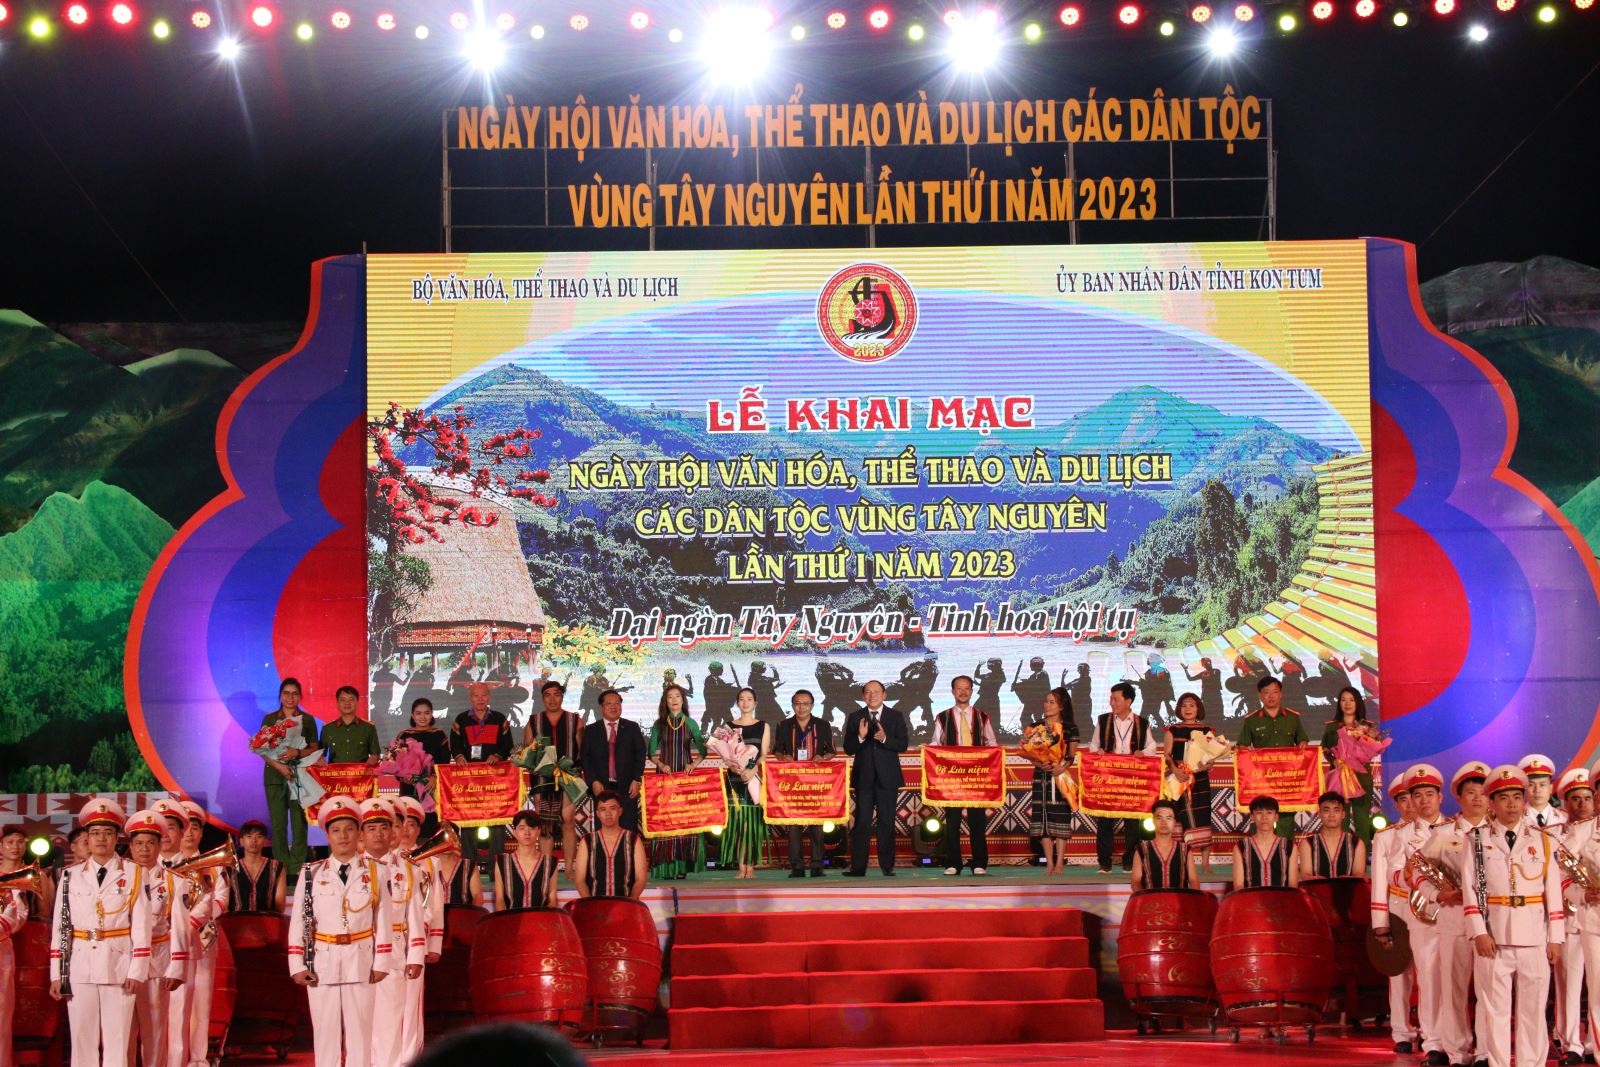 Khai mạc Ngày hội Văn hóa, thể thao và du lịch các dân tộc vùng Tây Nguyên lần thứ I tại tỉnh Kon Tum